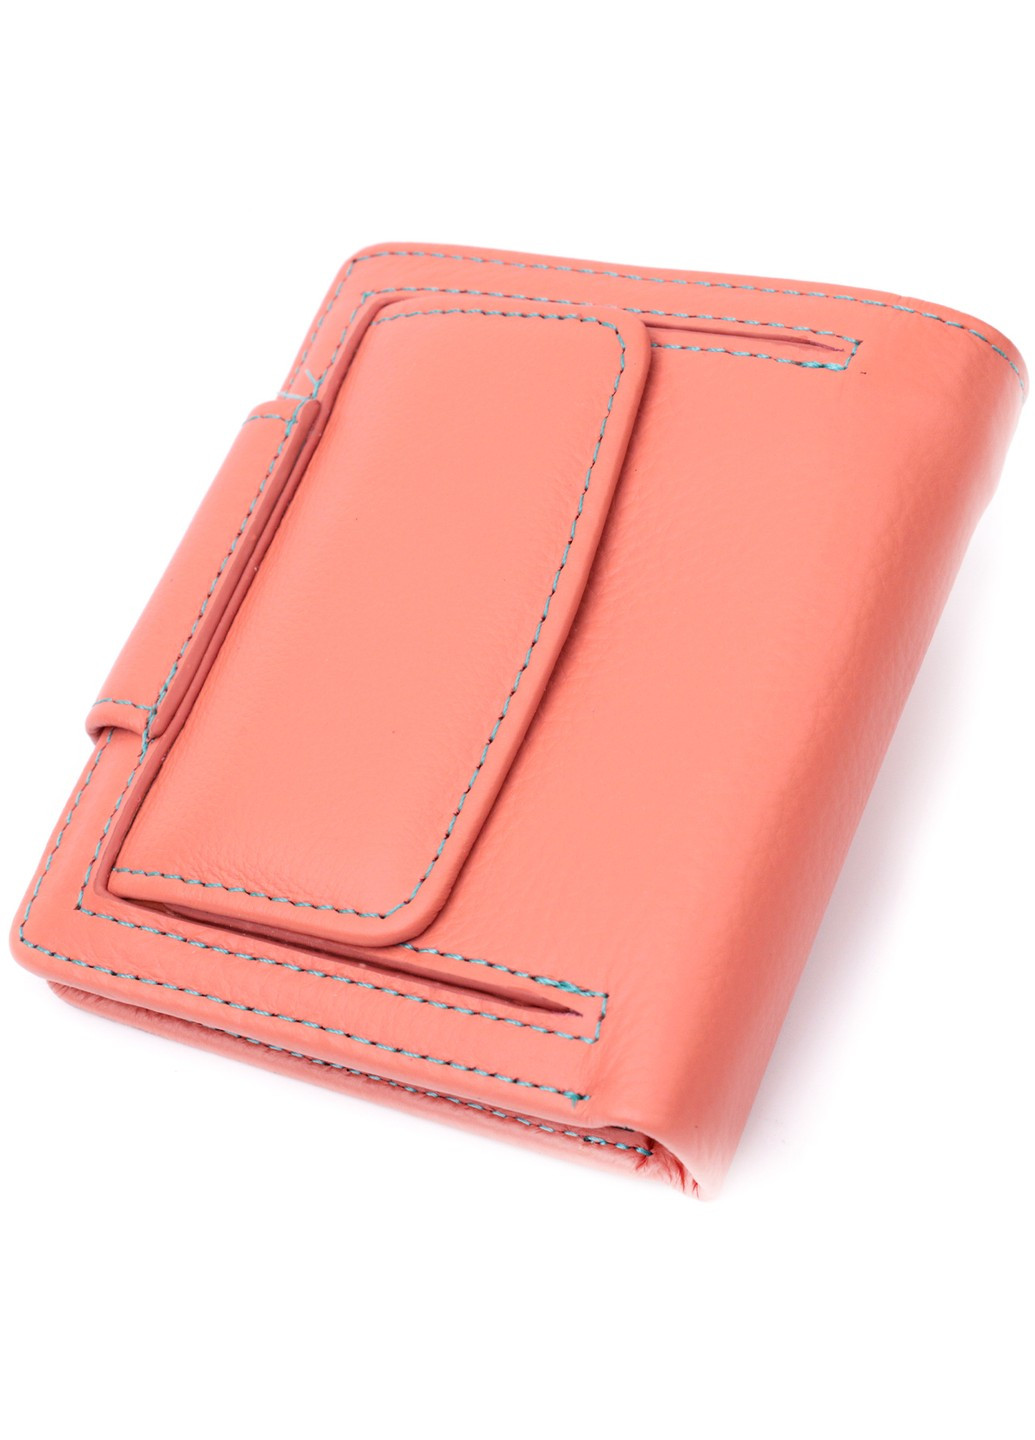 Стильный кожаный кошелек с монетницей снаружи для женщин 19458 Оранжевый st leather (278000990)